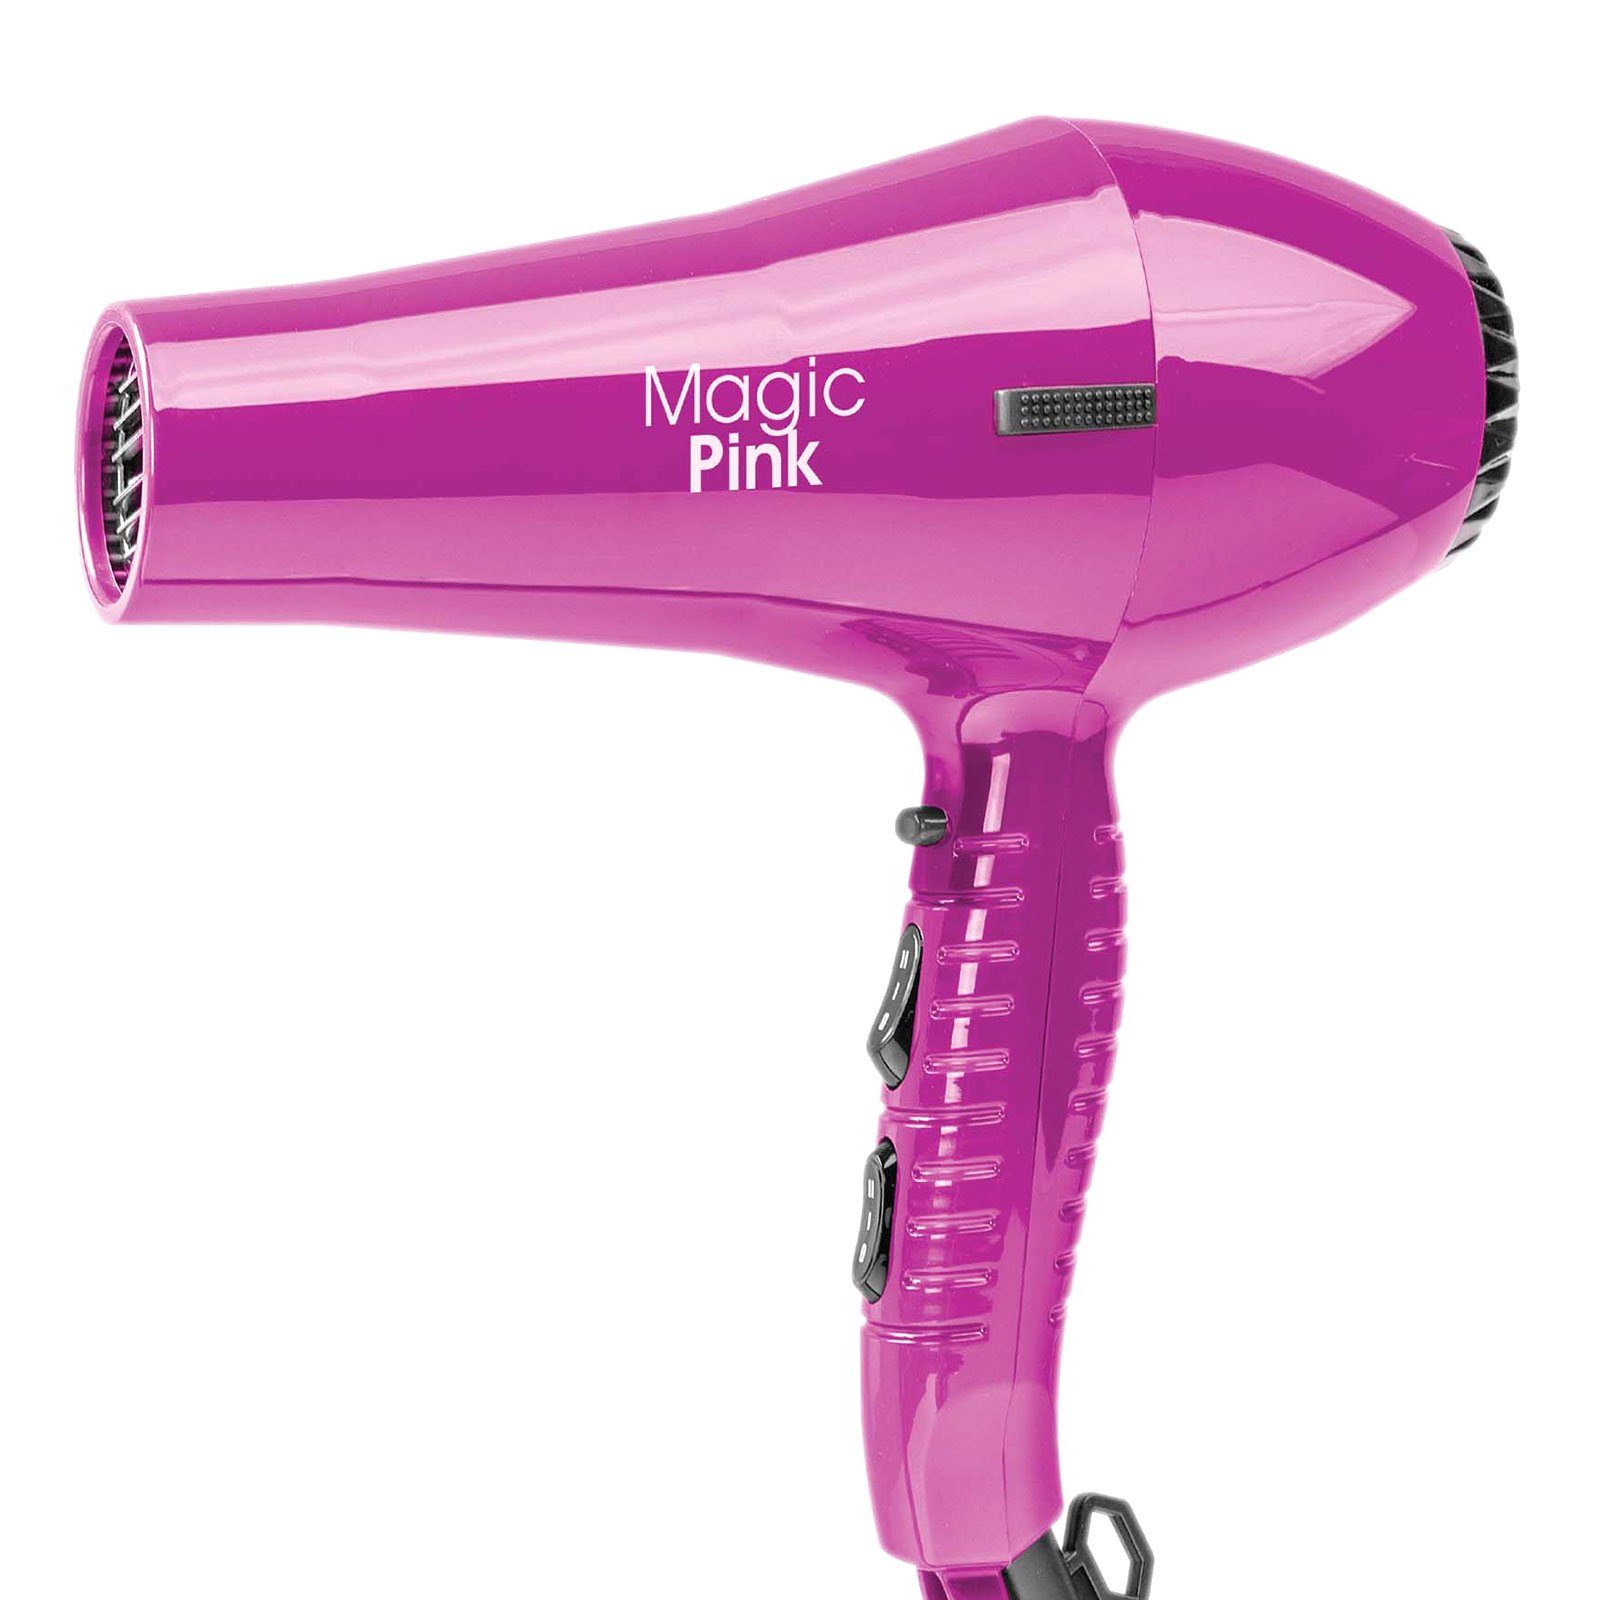 Kosmetex Haarschneider Haartrockner 2000 Watt, professioneller Föhn, Magic Pink | Haarschneider